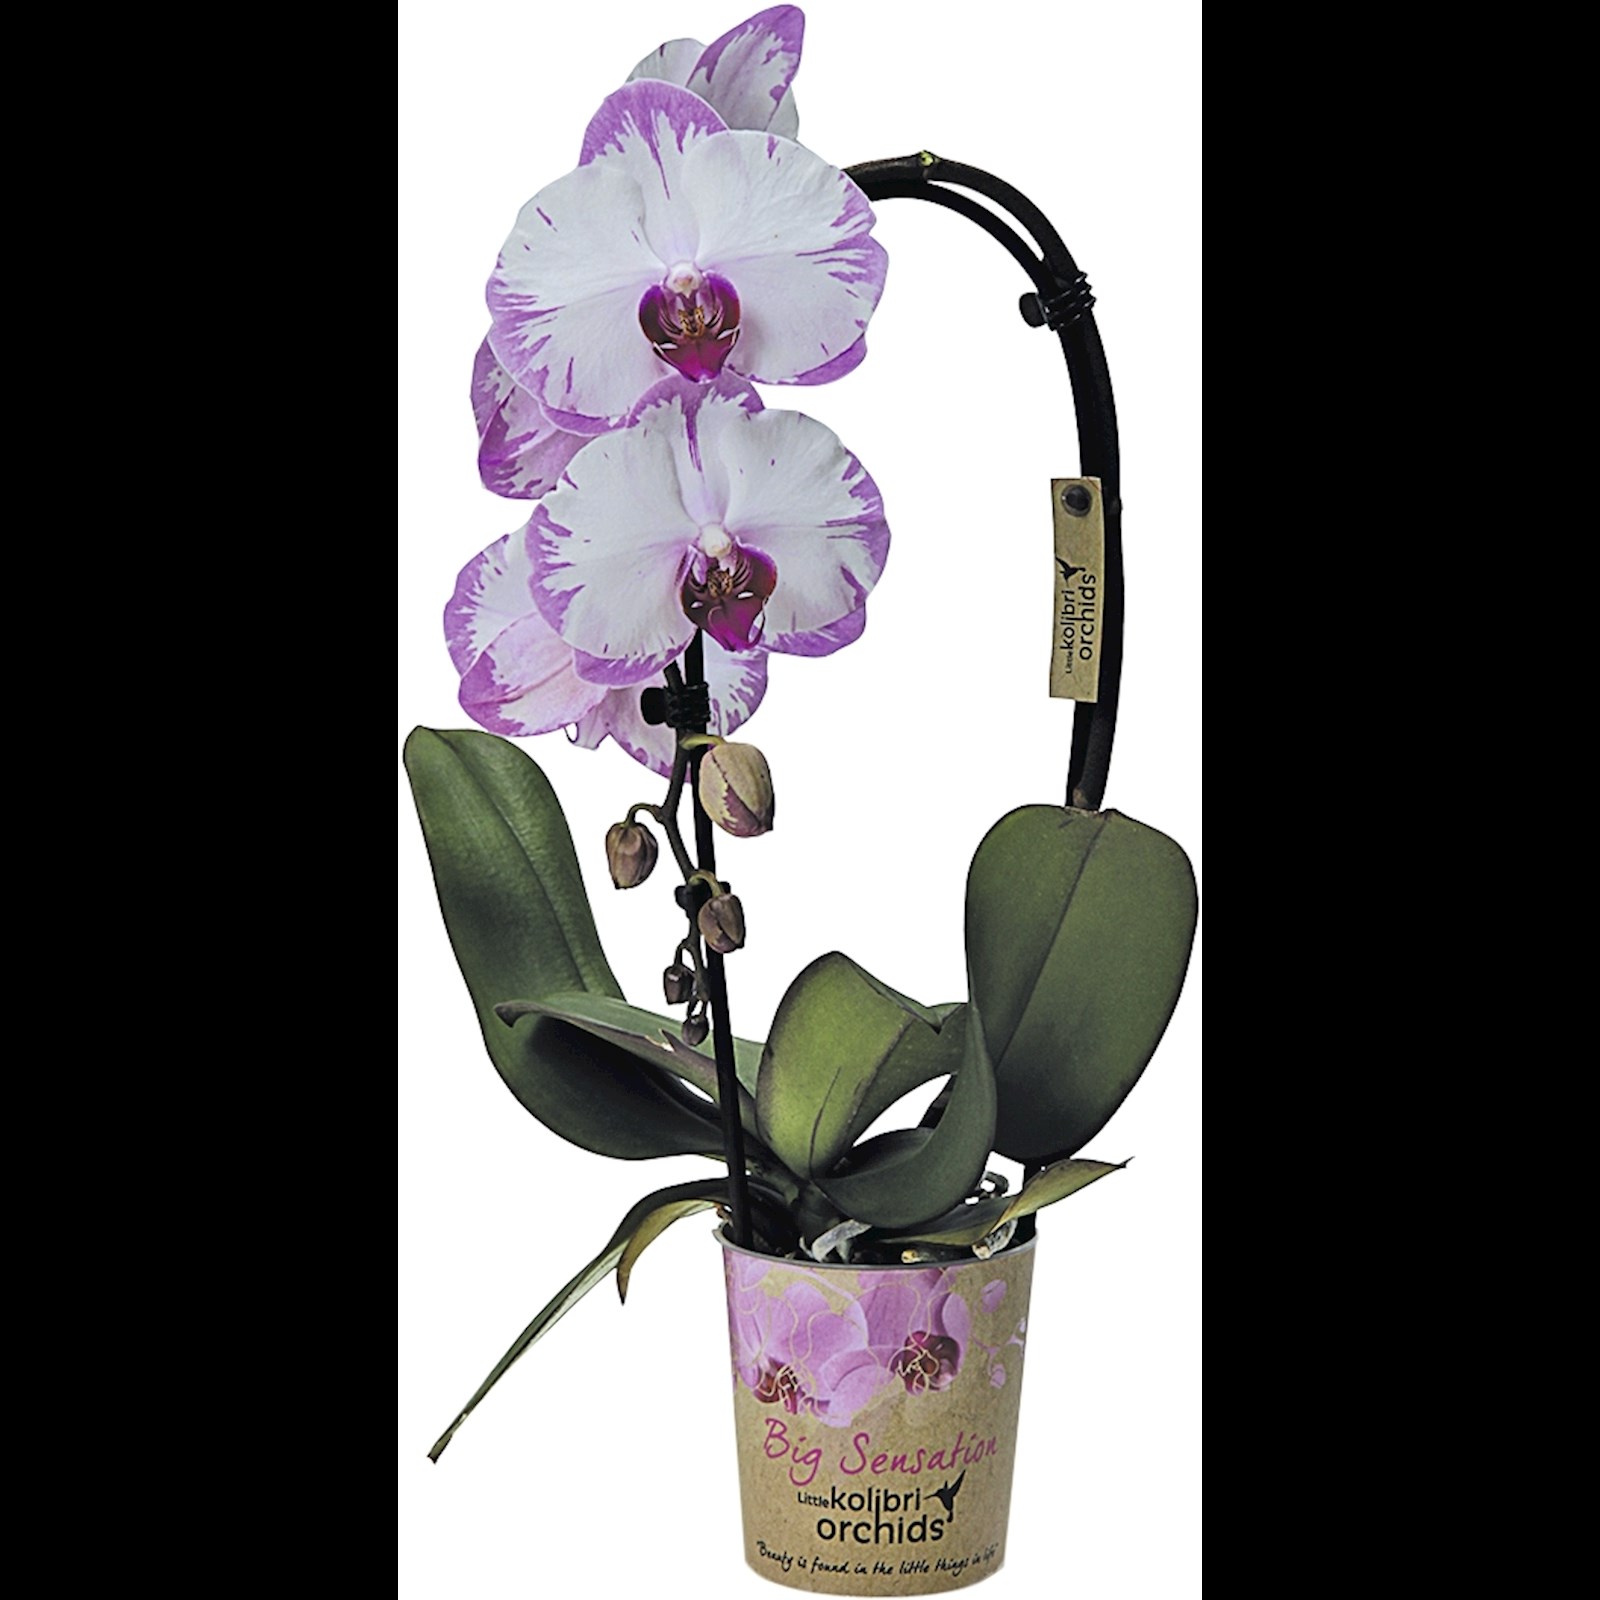 Acheter une orchidée dans une pépinière d'orchidées - Kolibri Company